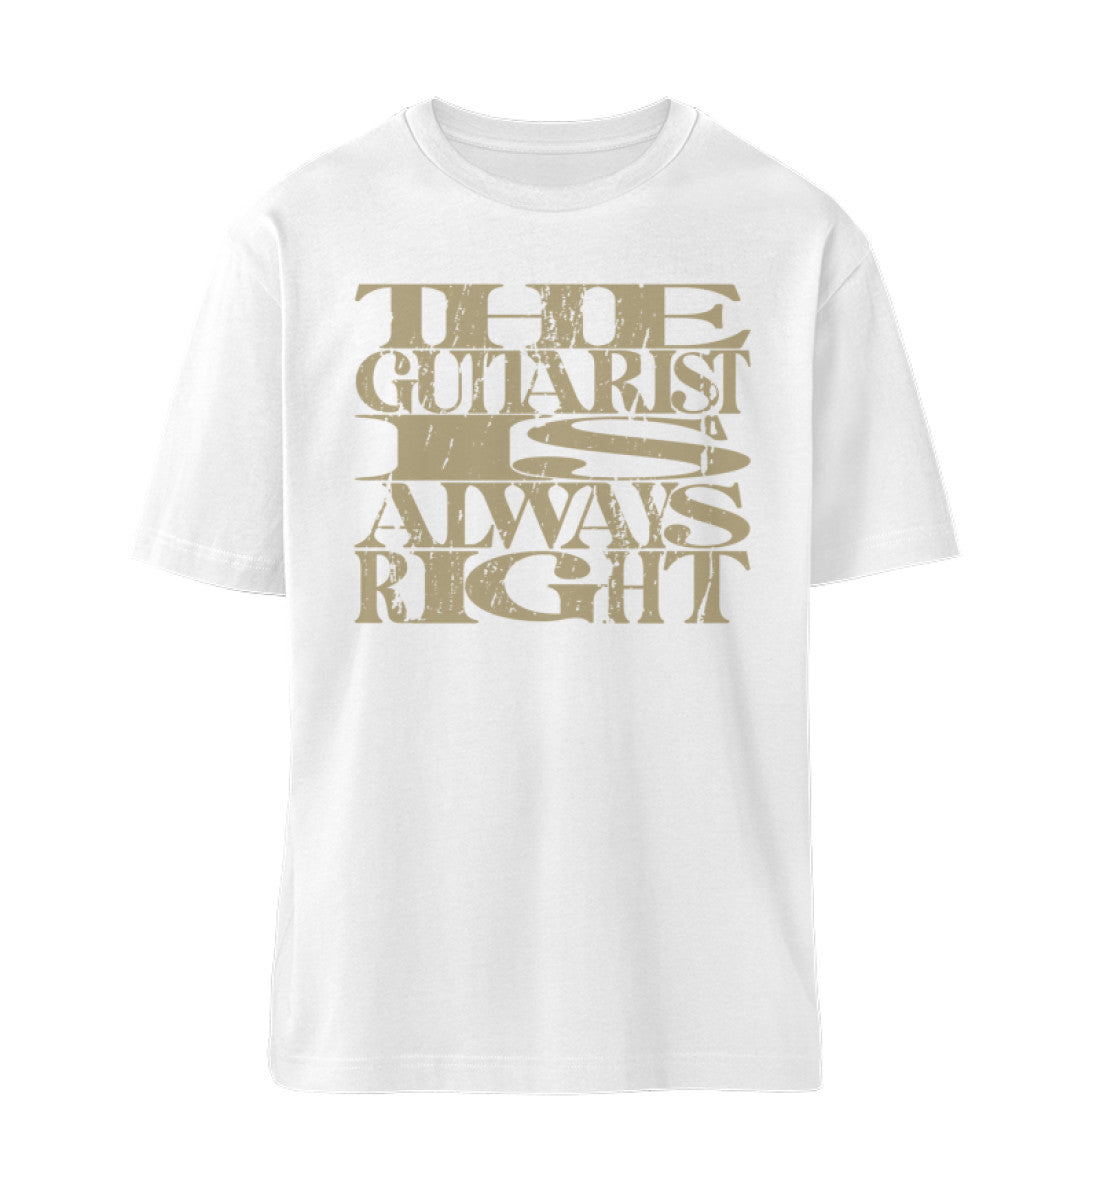 Weißes T-Shirt Unisex Relaxed Fit für Frauen und Männer bedruckt mit dem Design der Roger Rockawoo Clothing Kollektion the guitarist is always right